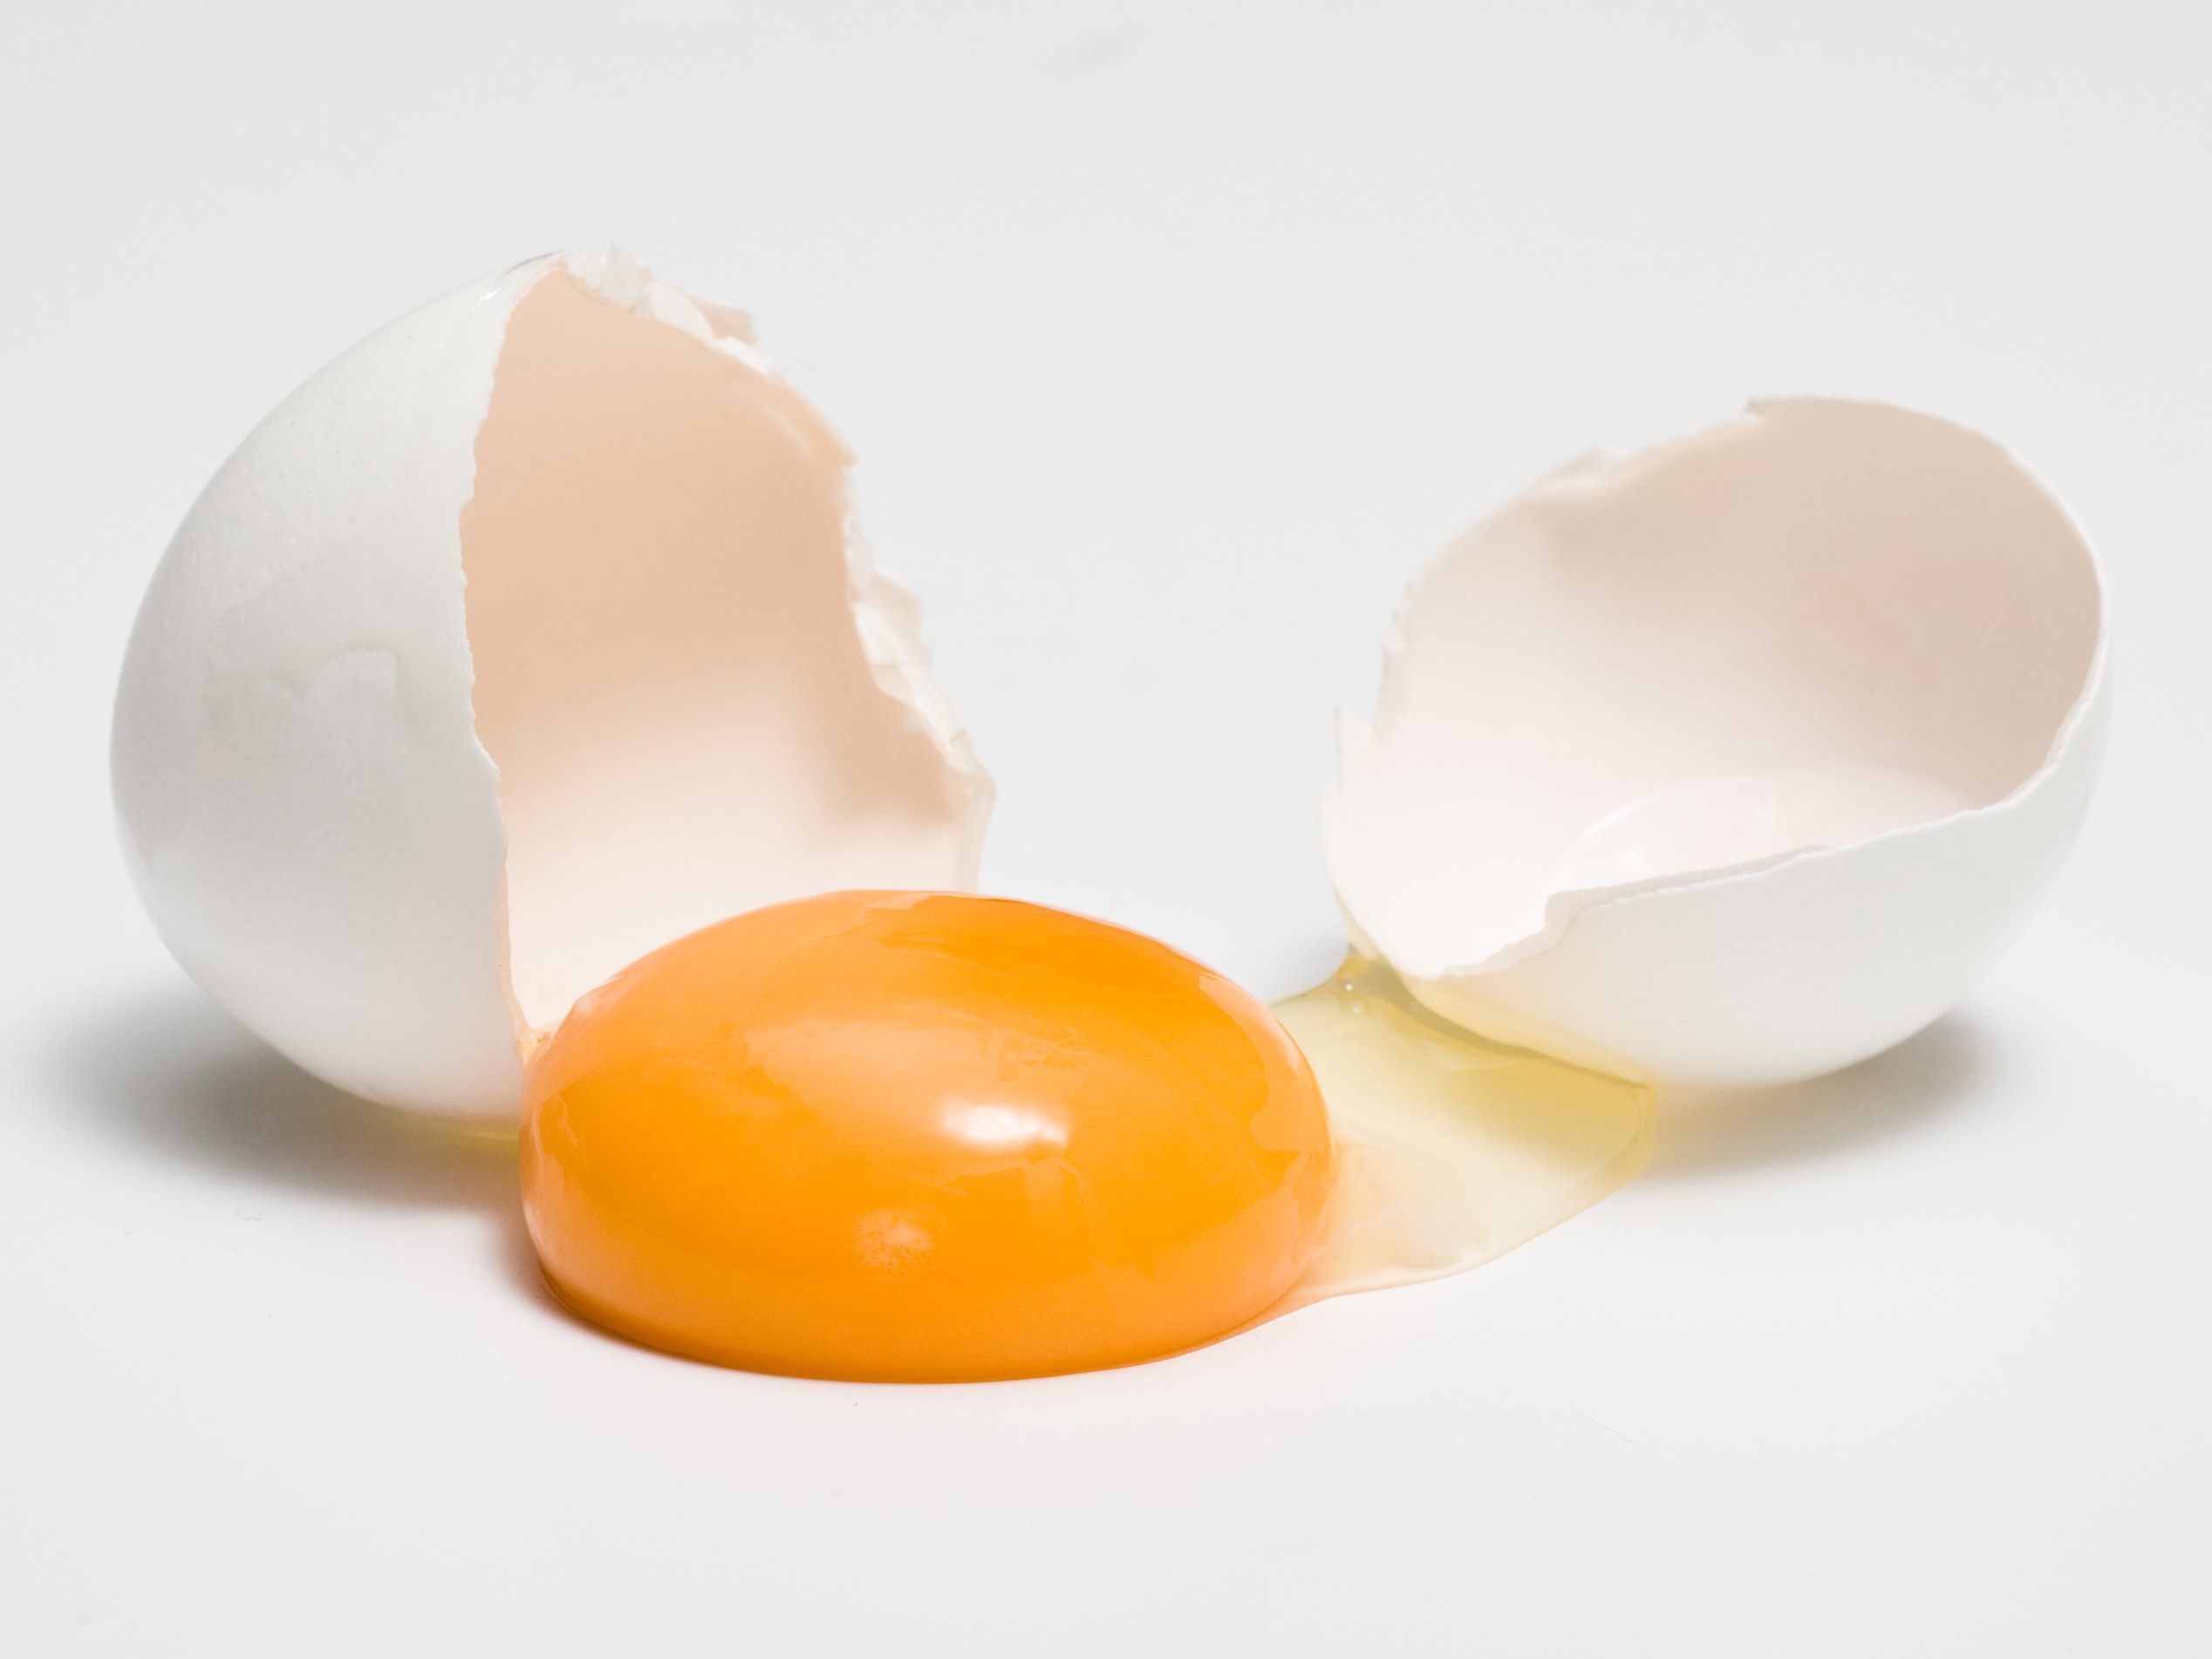 Желток прилагательное. Яичный желток на прозрачном фоне. Яичный желток на белом фоне. Яйцо льётся. Разбитое яйцо картинка.